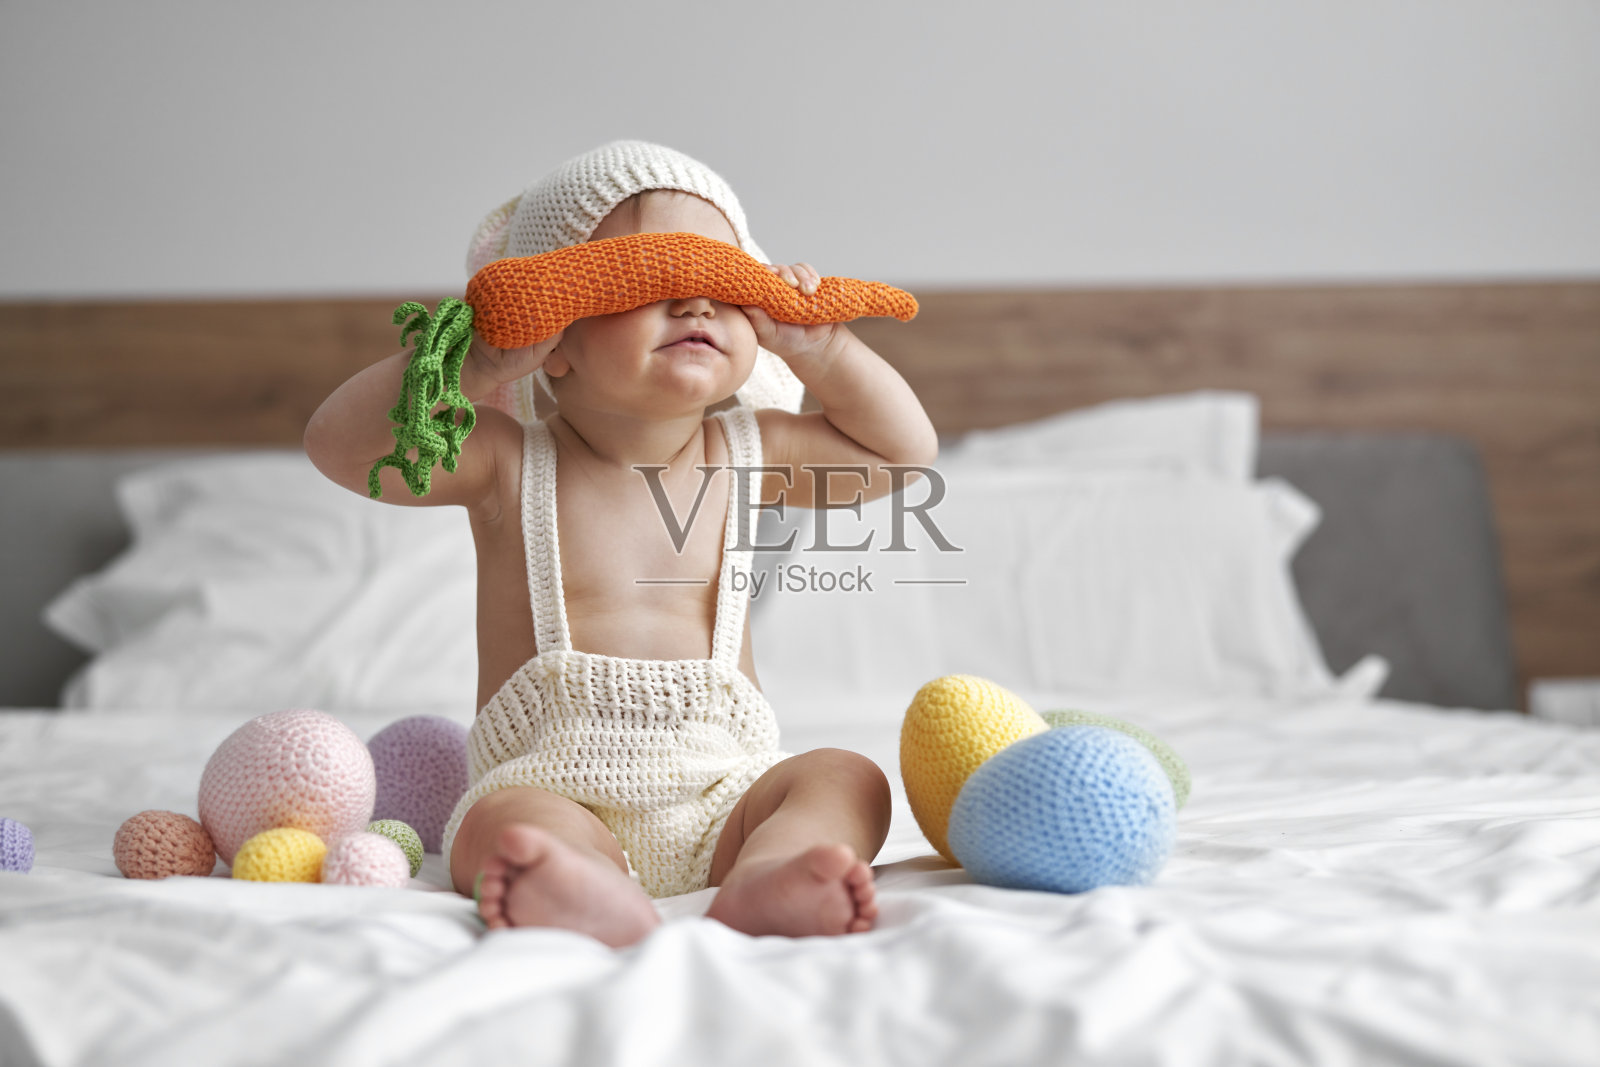 穿着兔子服装的小婴儿用大胡萝卜遮住眼睛照片摄影图片